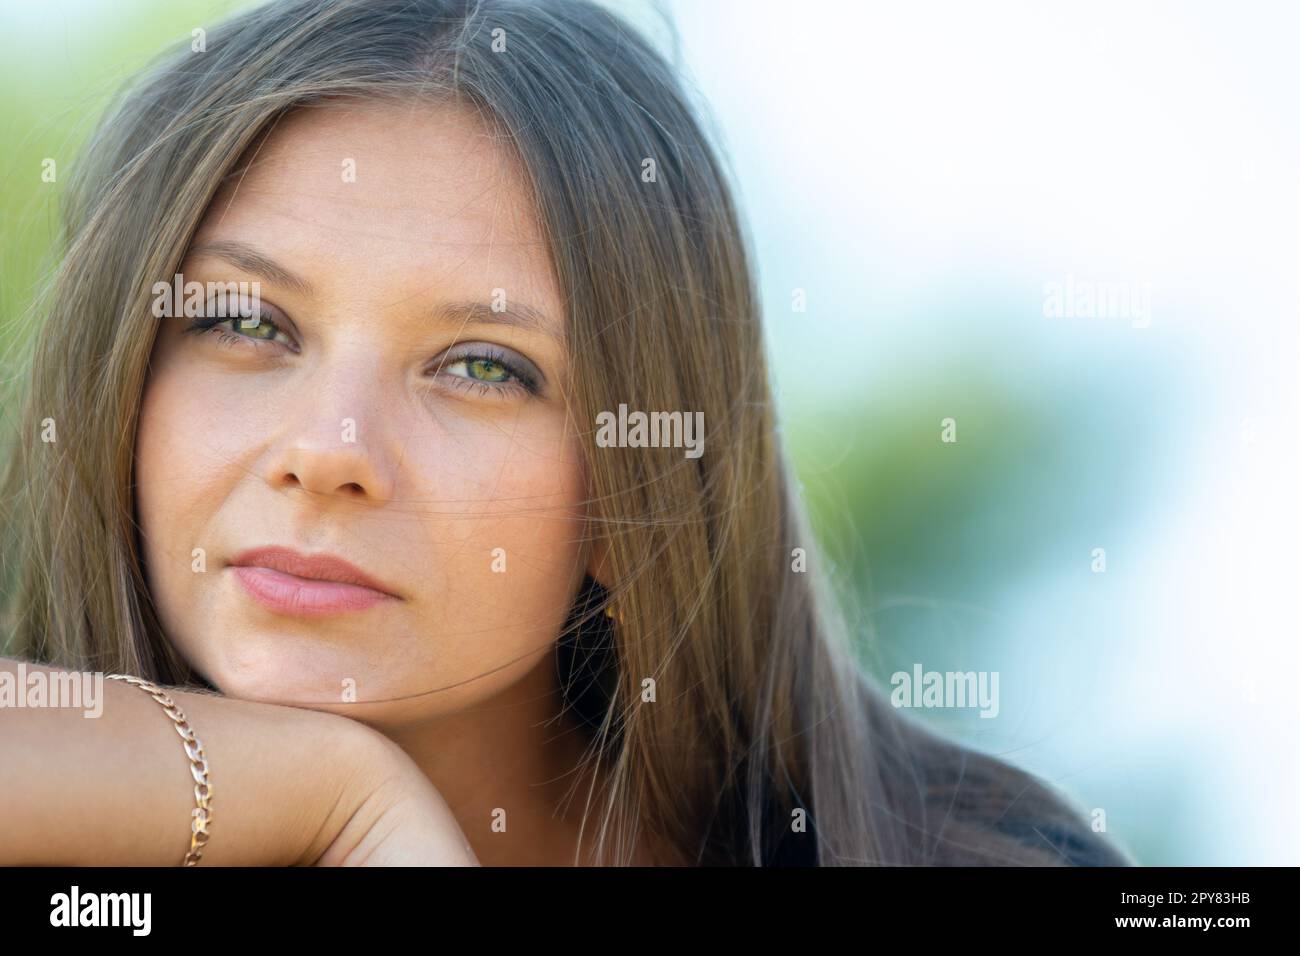 Nahaufnahme Porträt eines schönen Mädchen von slawischem Aussehen, das Mädchen schielt in den Rahmen Stockfoto